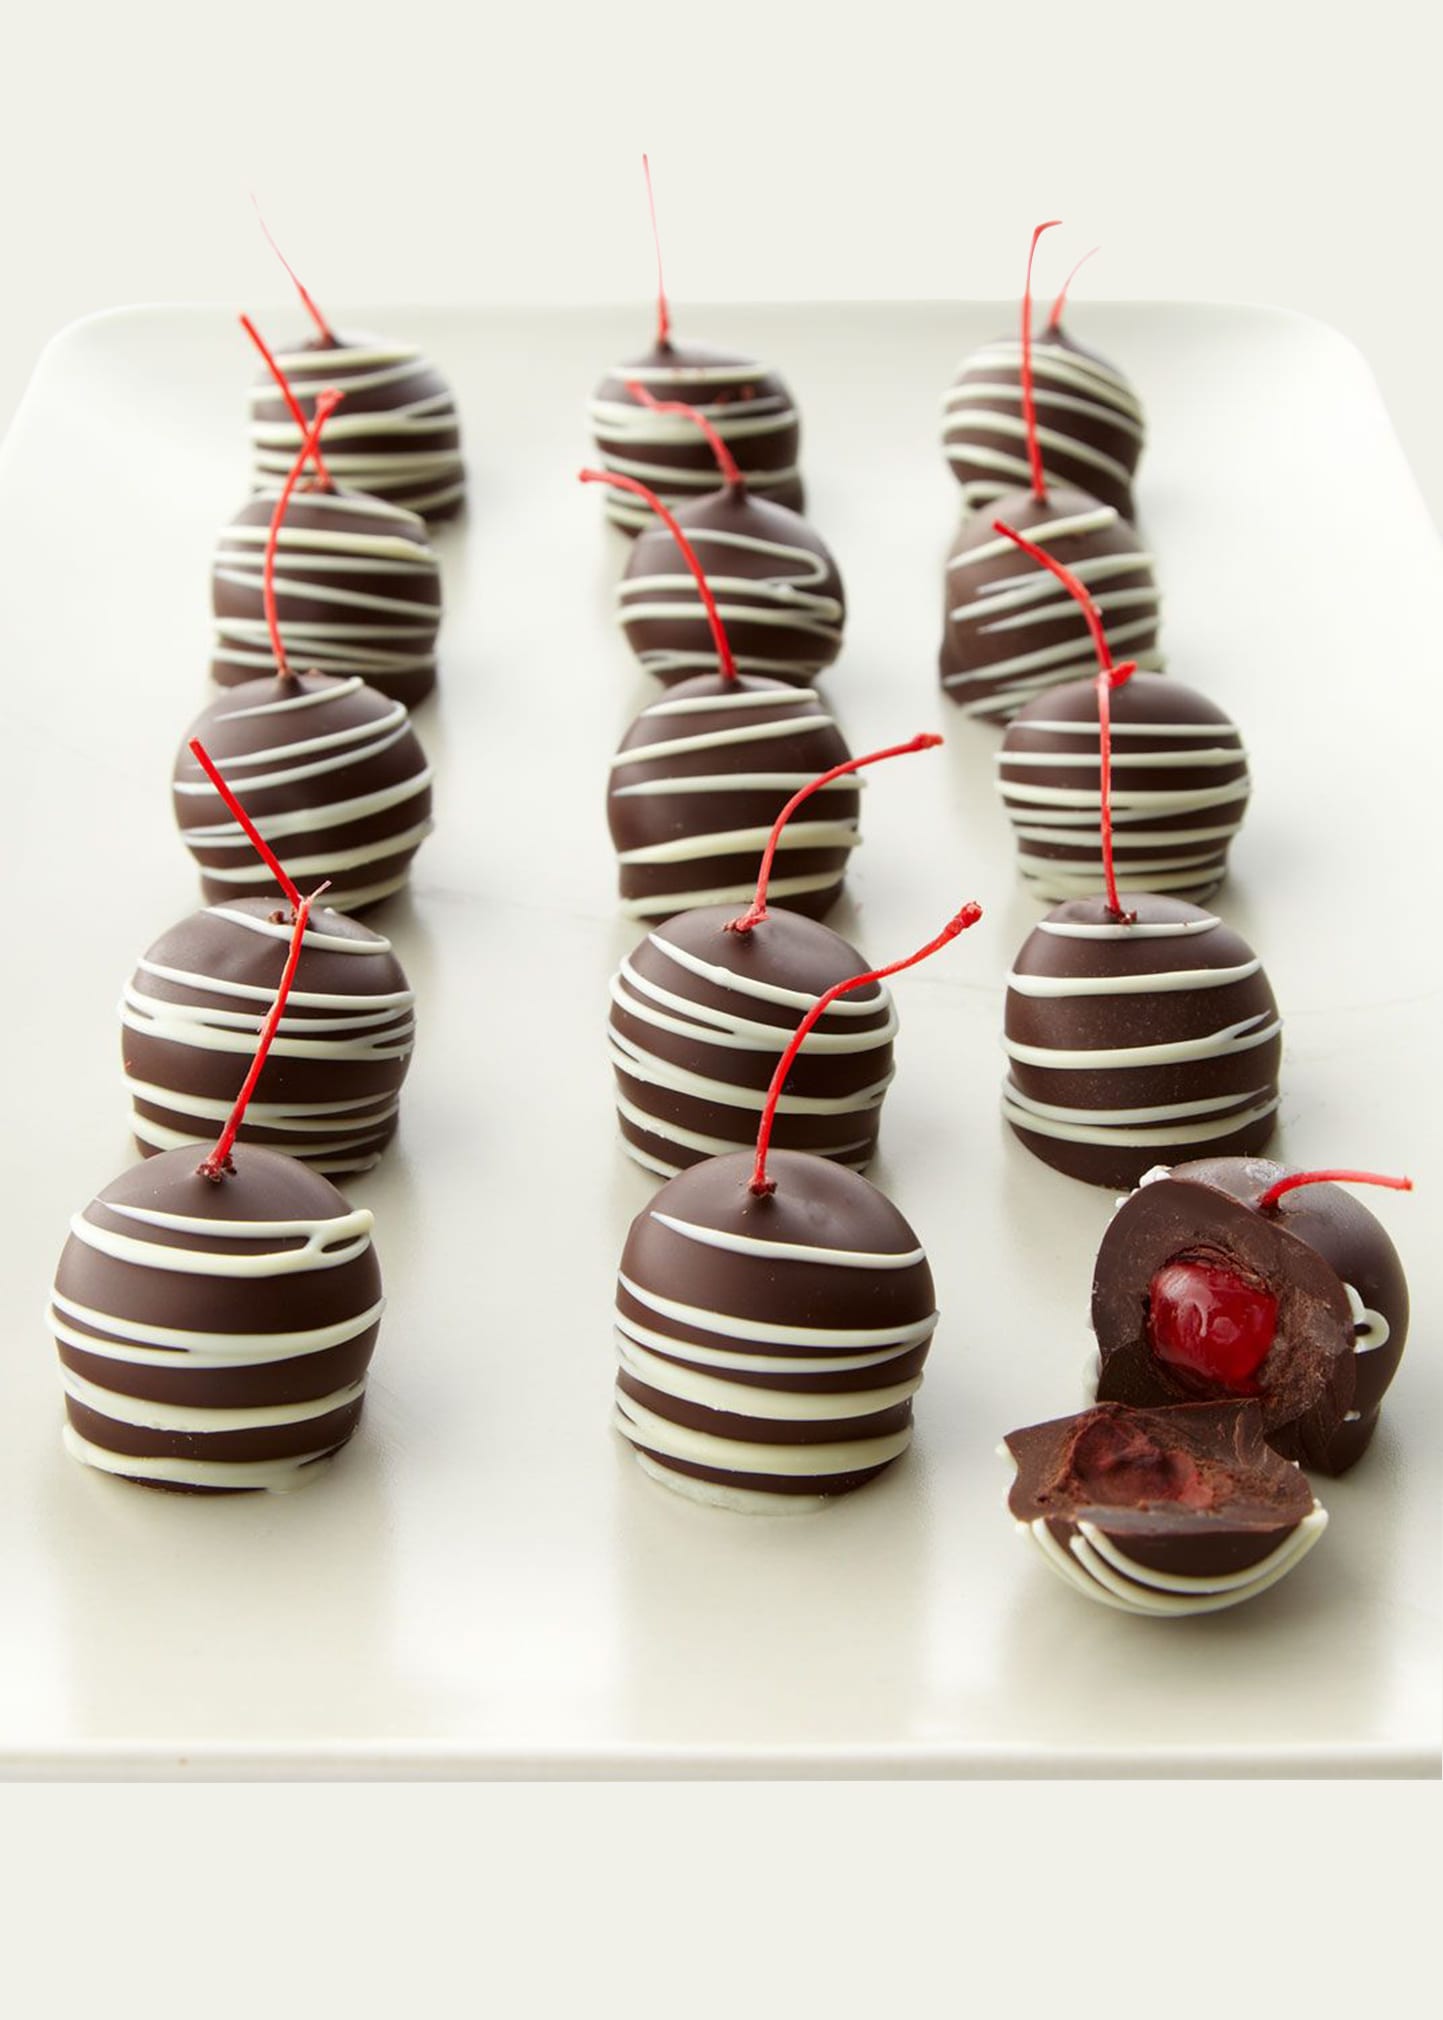 Dark-Chocolate Maraschino Cherries